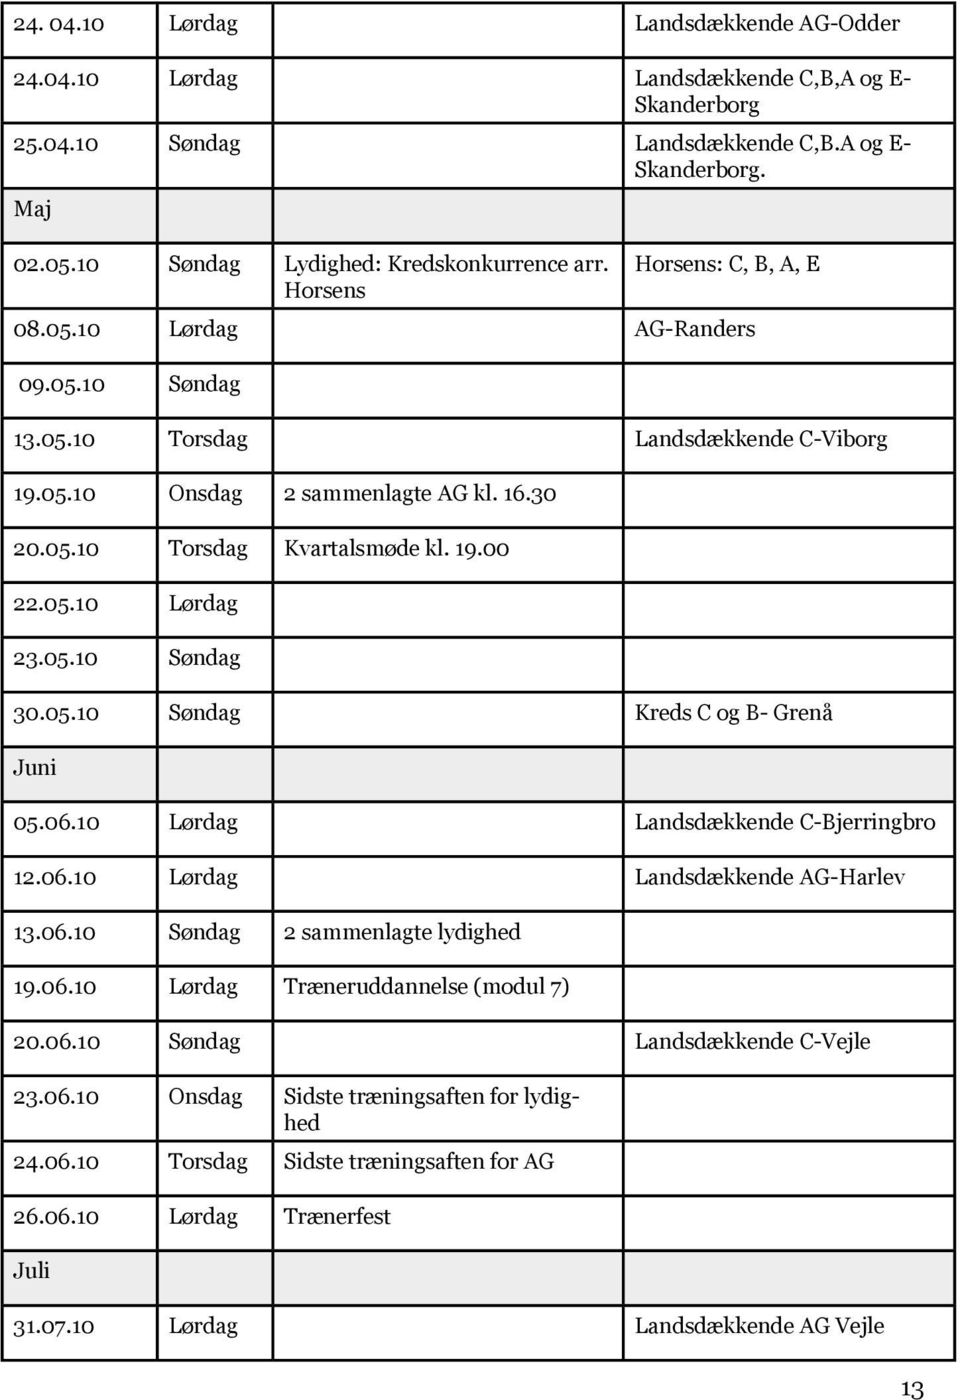 05.10 Søndag 30.05.10 Søndag Kreds C og B- Grenå Juni 05.06.10 Lørdag Landsdækkende C-Bjerringbro 12.06.10 Lørdag Landsdækkende AG-Harlev 13.06.10 Søndag 2 sammenlagte lydighed 19.06.10 Lørdag Træneruddannelse (modul 7) 20.